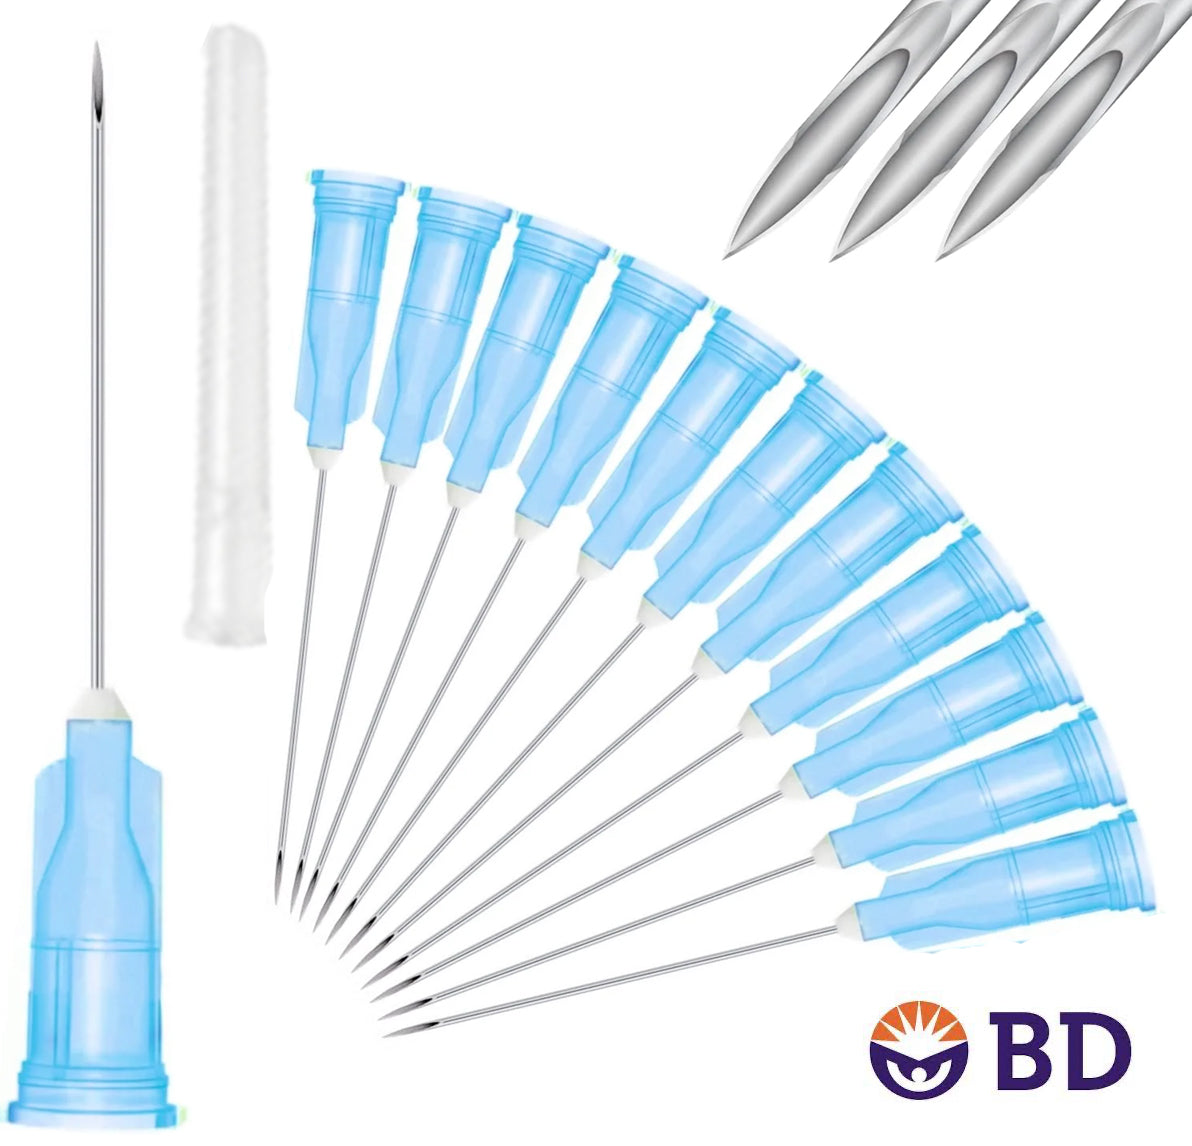 BD 23G x 1" Medical Needle (10pk)